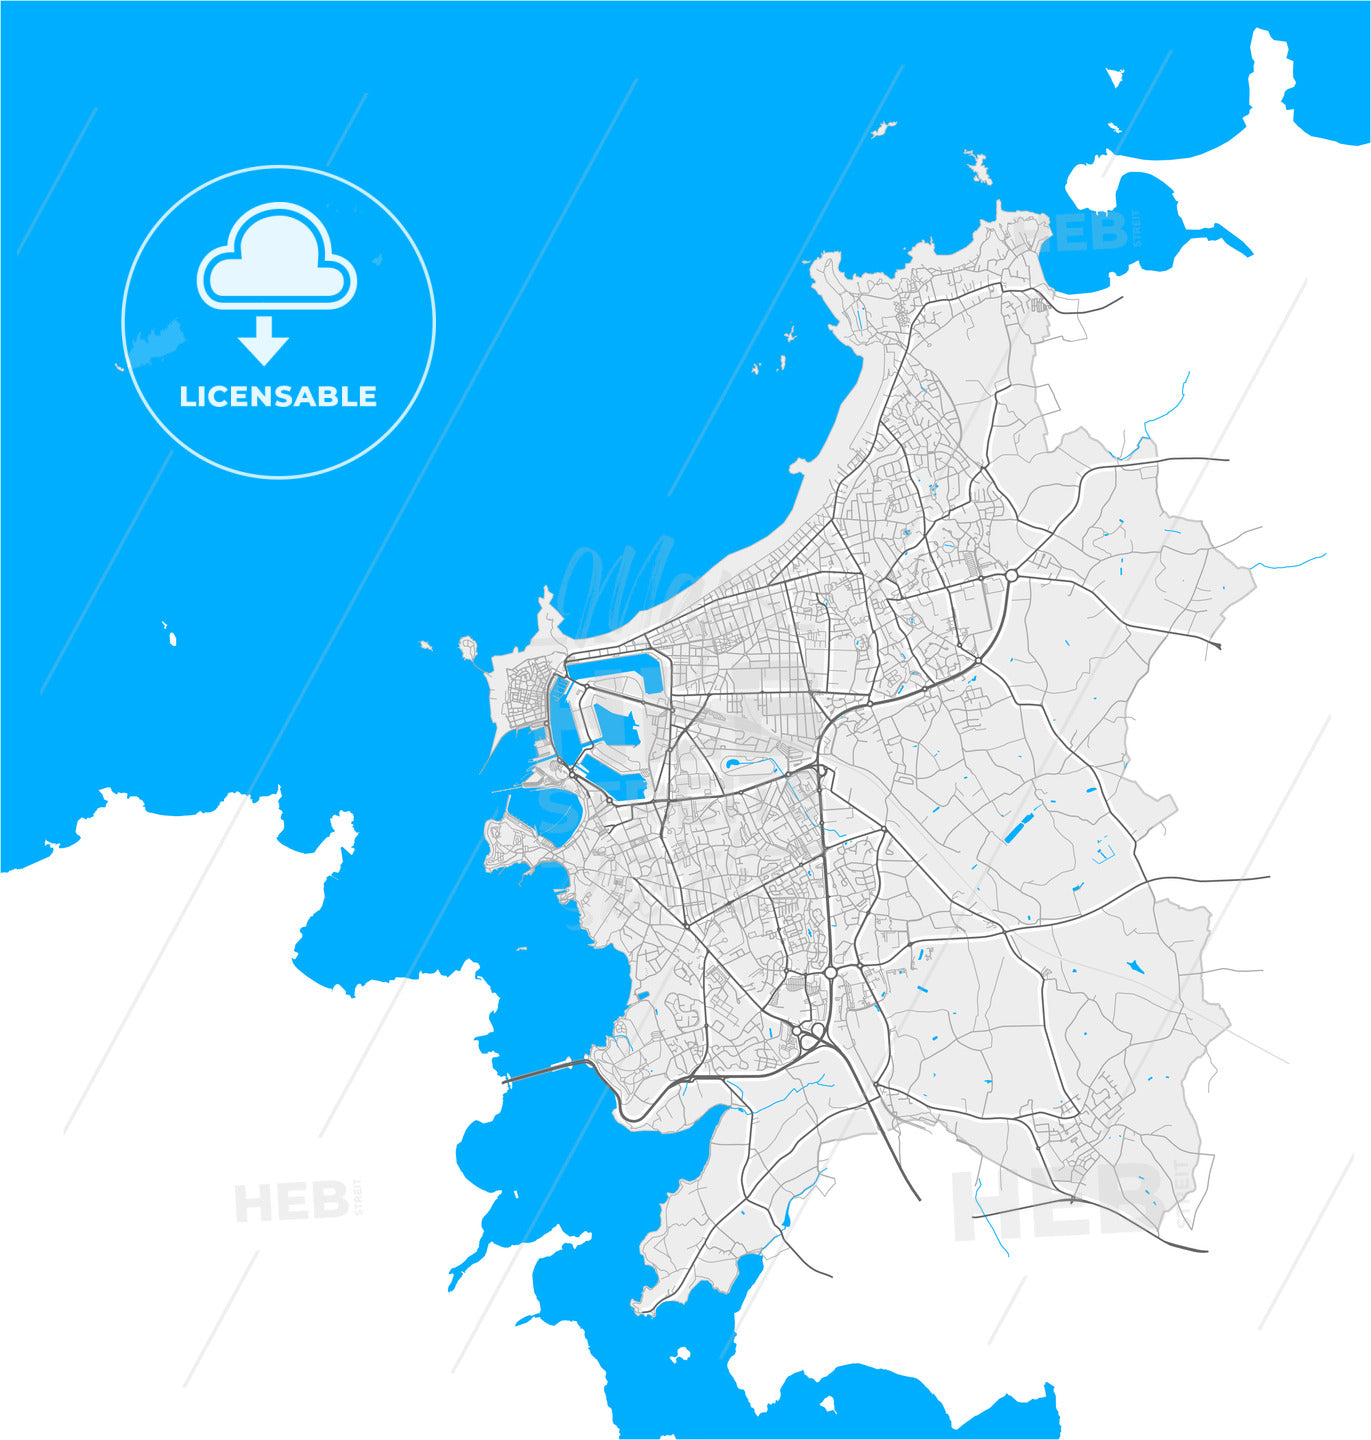 Saint-Malo, Ille-et-Vilaine, France, high quality vector map